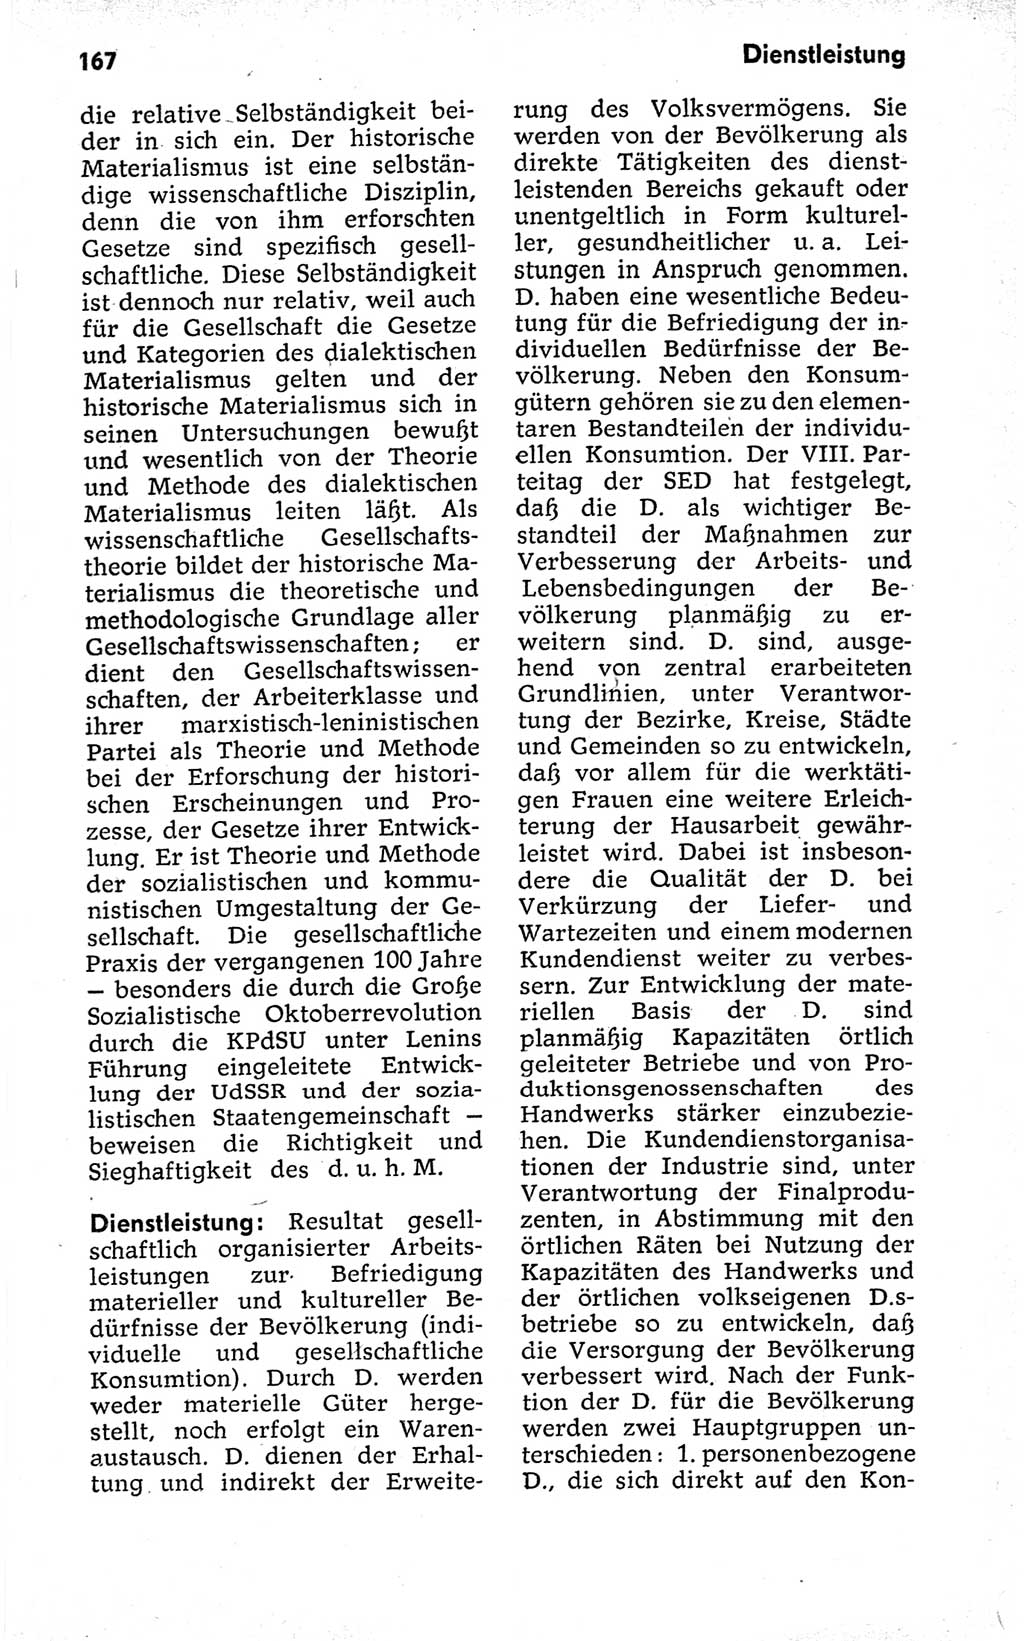 Kleines politisches Wörterbuch [Deutsche Demokratische Republik (DDR)] 1973, Seite 167 (Kl. pol. Wb. DDR 1973, S. 167)